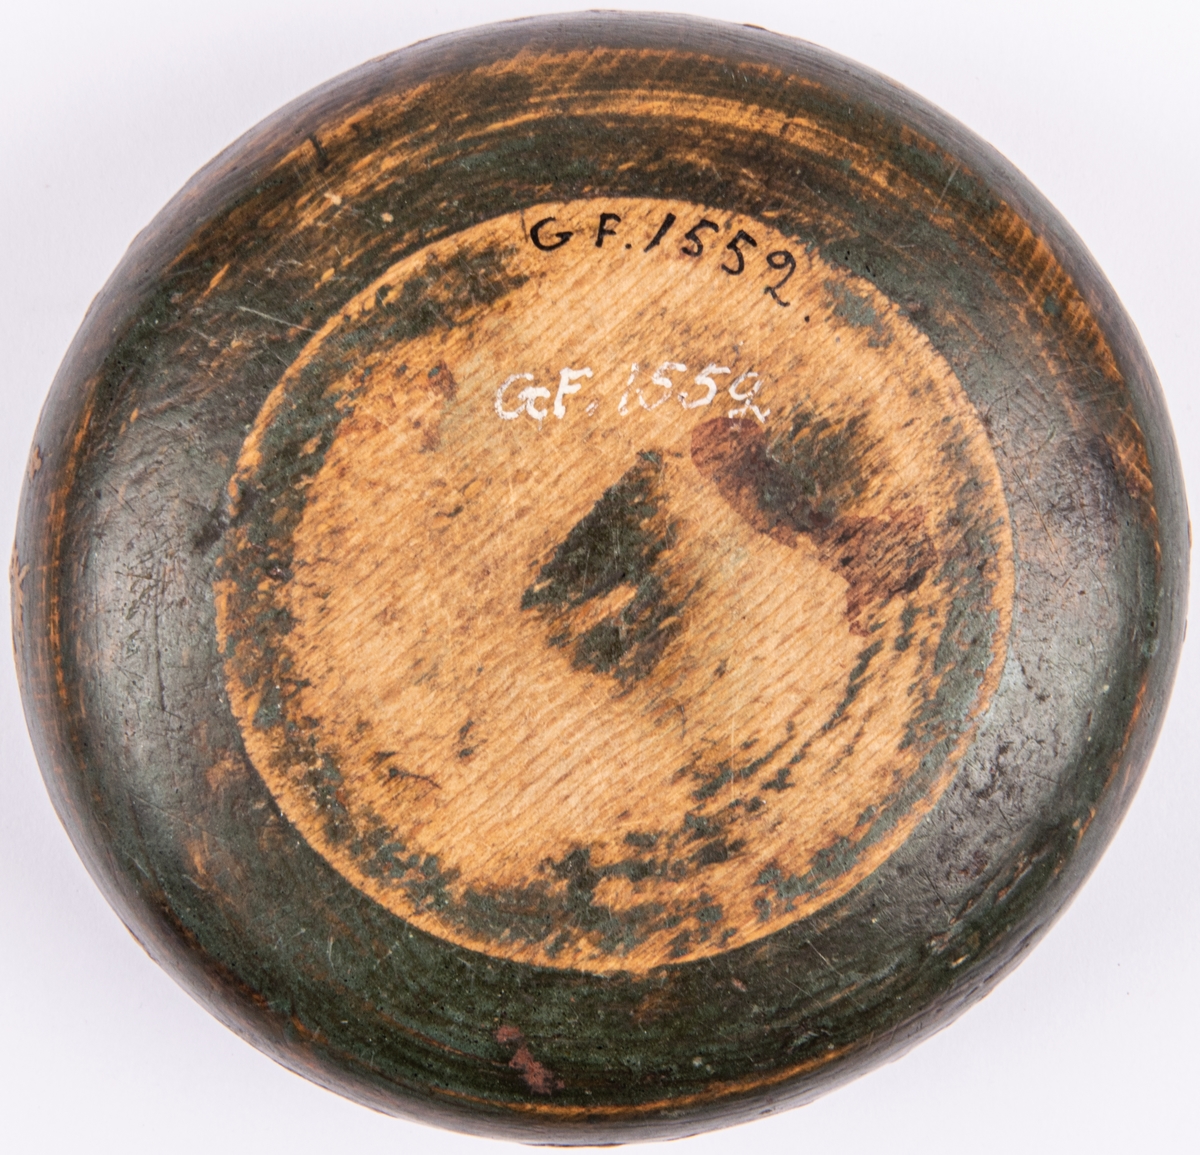 Träask med lock, trä, grönmålat med sicksackmönster, märkt ABQ AO 1789.